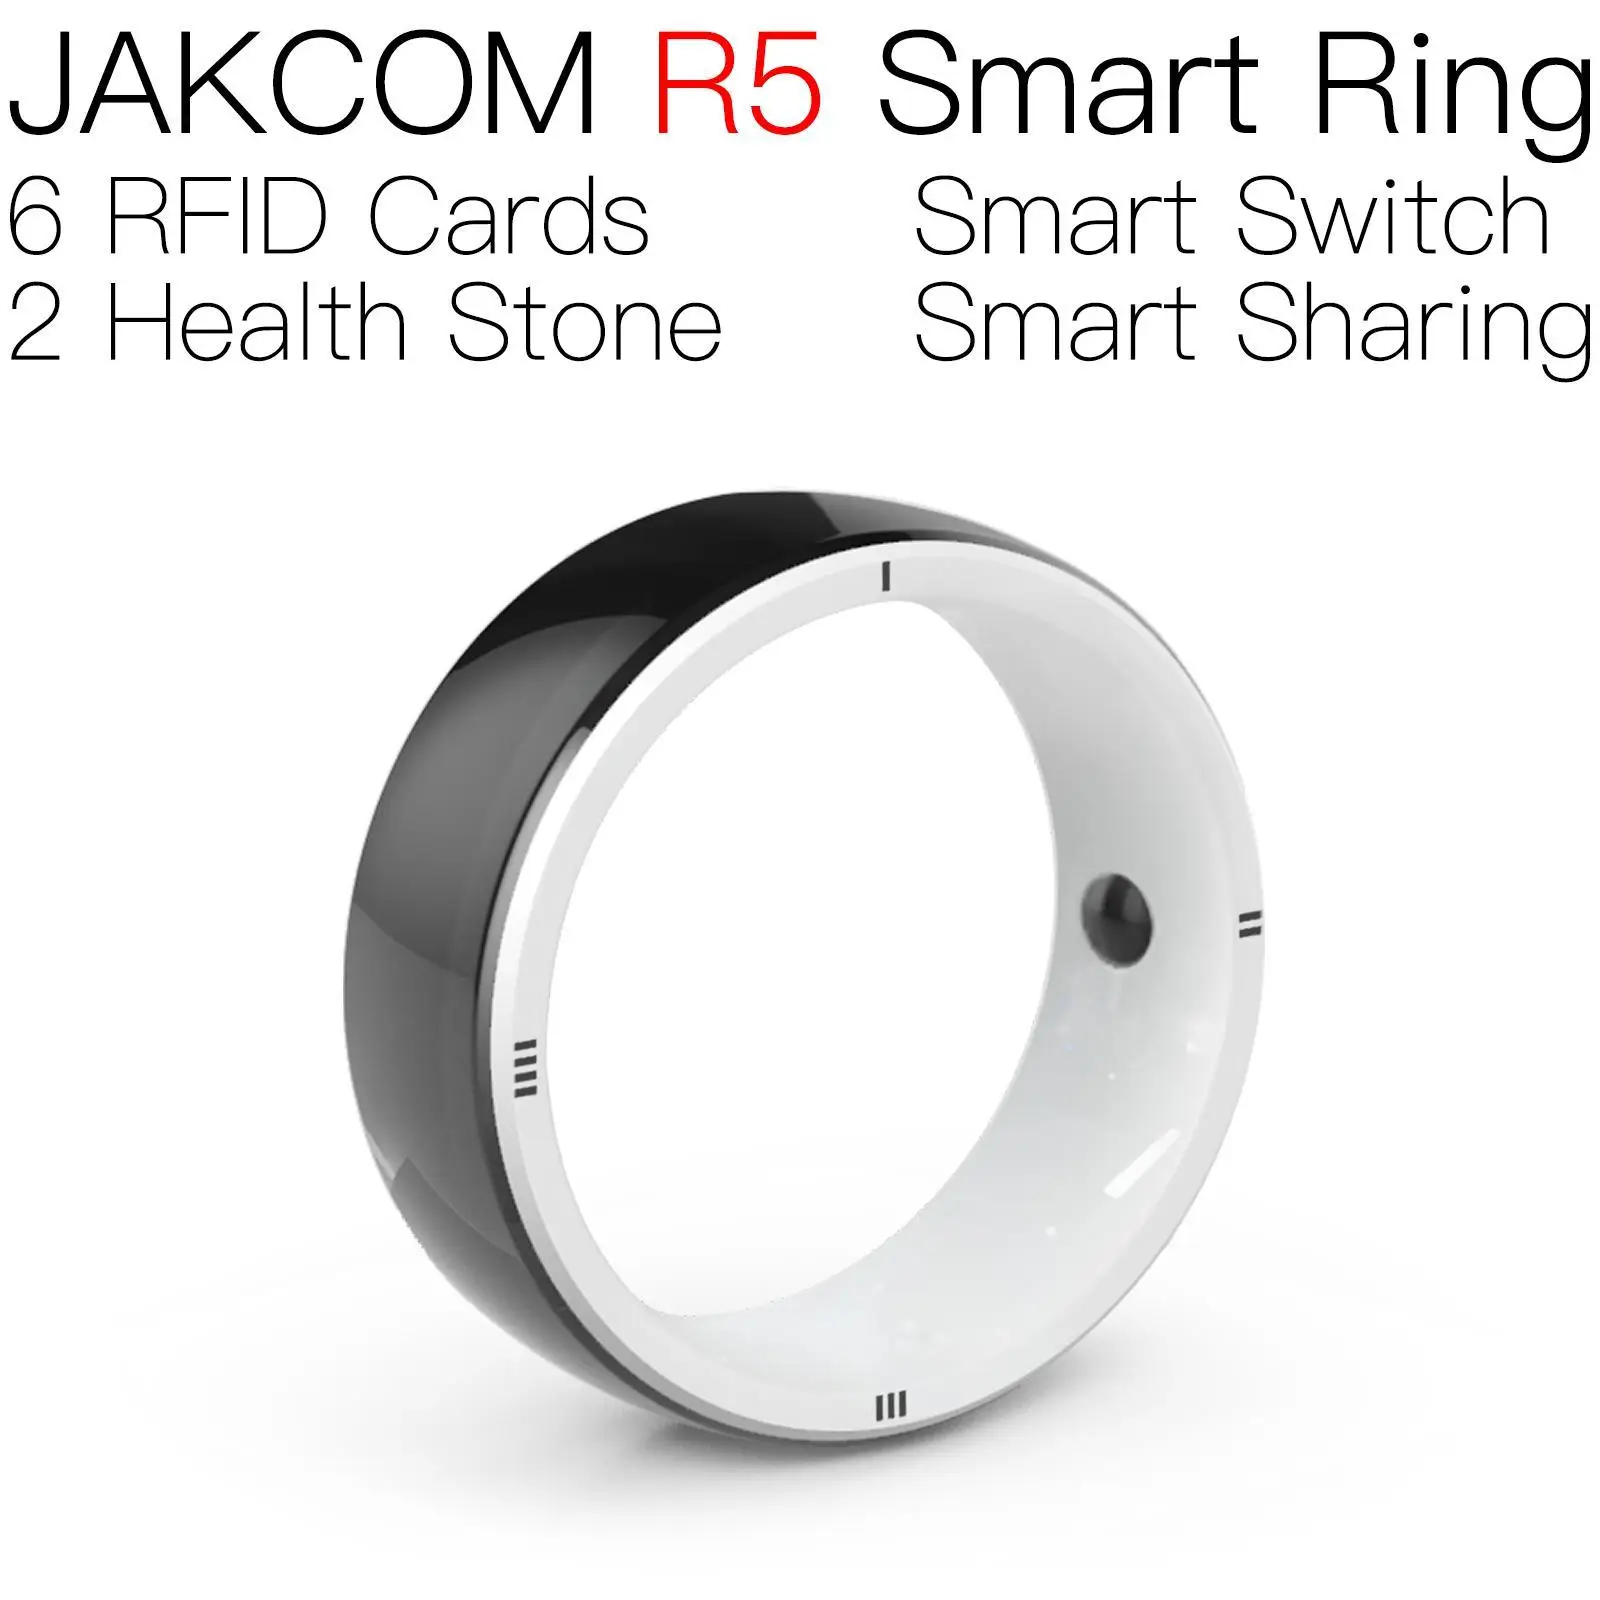 

Смарт-кольцо JAKCOM R5 для мужчин и женщин, 125 кГц, копия ключа, перезаписываемая, этикетка, температурная идентификация, карта из углеродного волокна